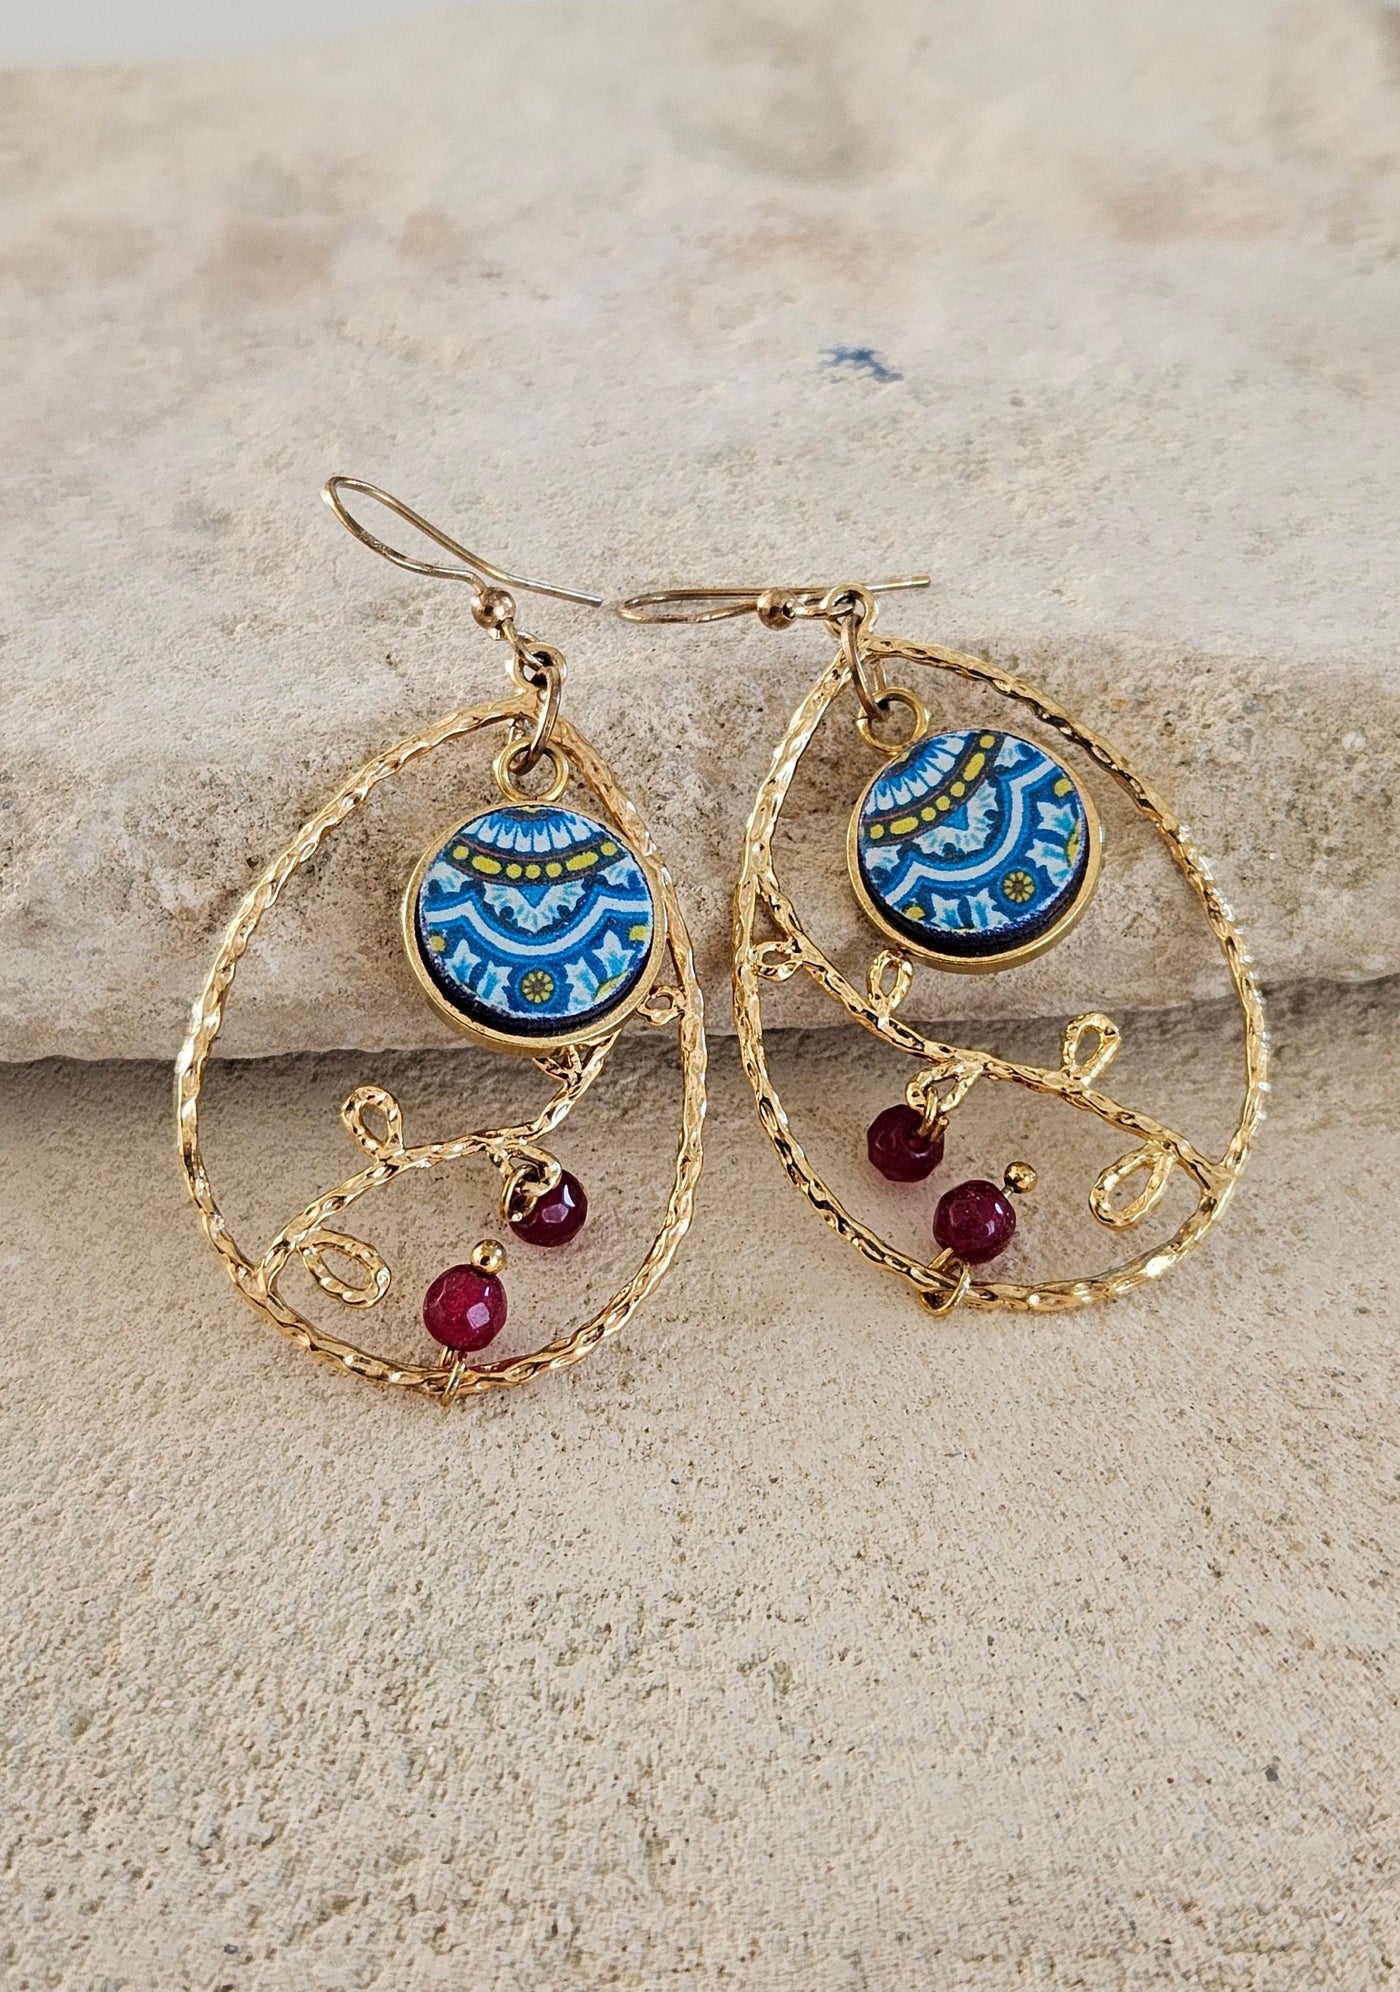 Mexican Teardrop Tile Earring Gold Filled Mexico Tile Hoops Dainty Blue Round Tile Chandelier Earrings Tile Teardrop Garnet Natural Gemstone